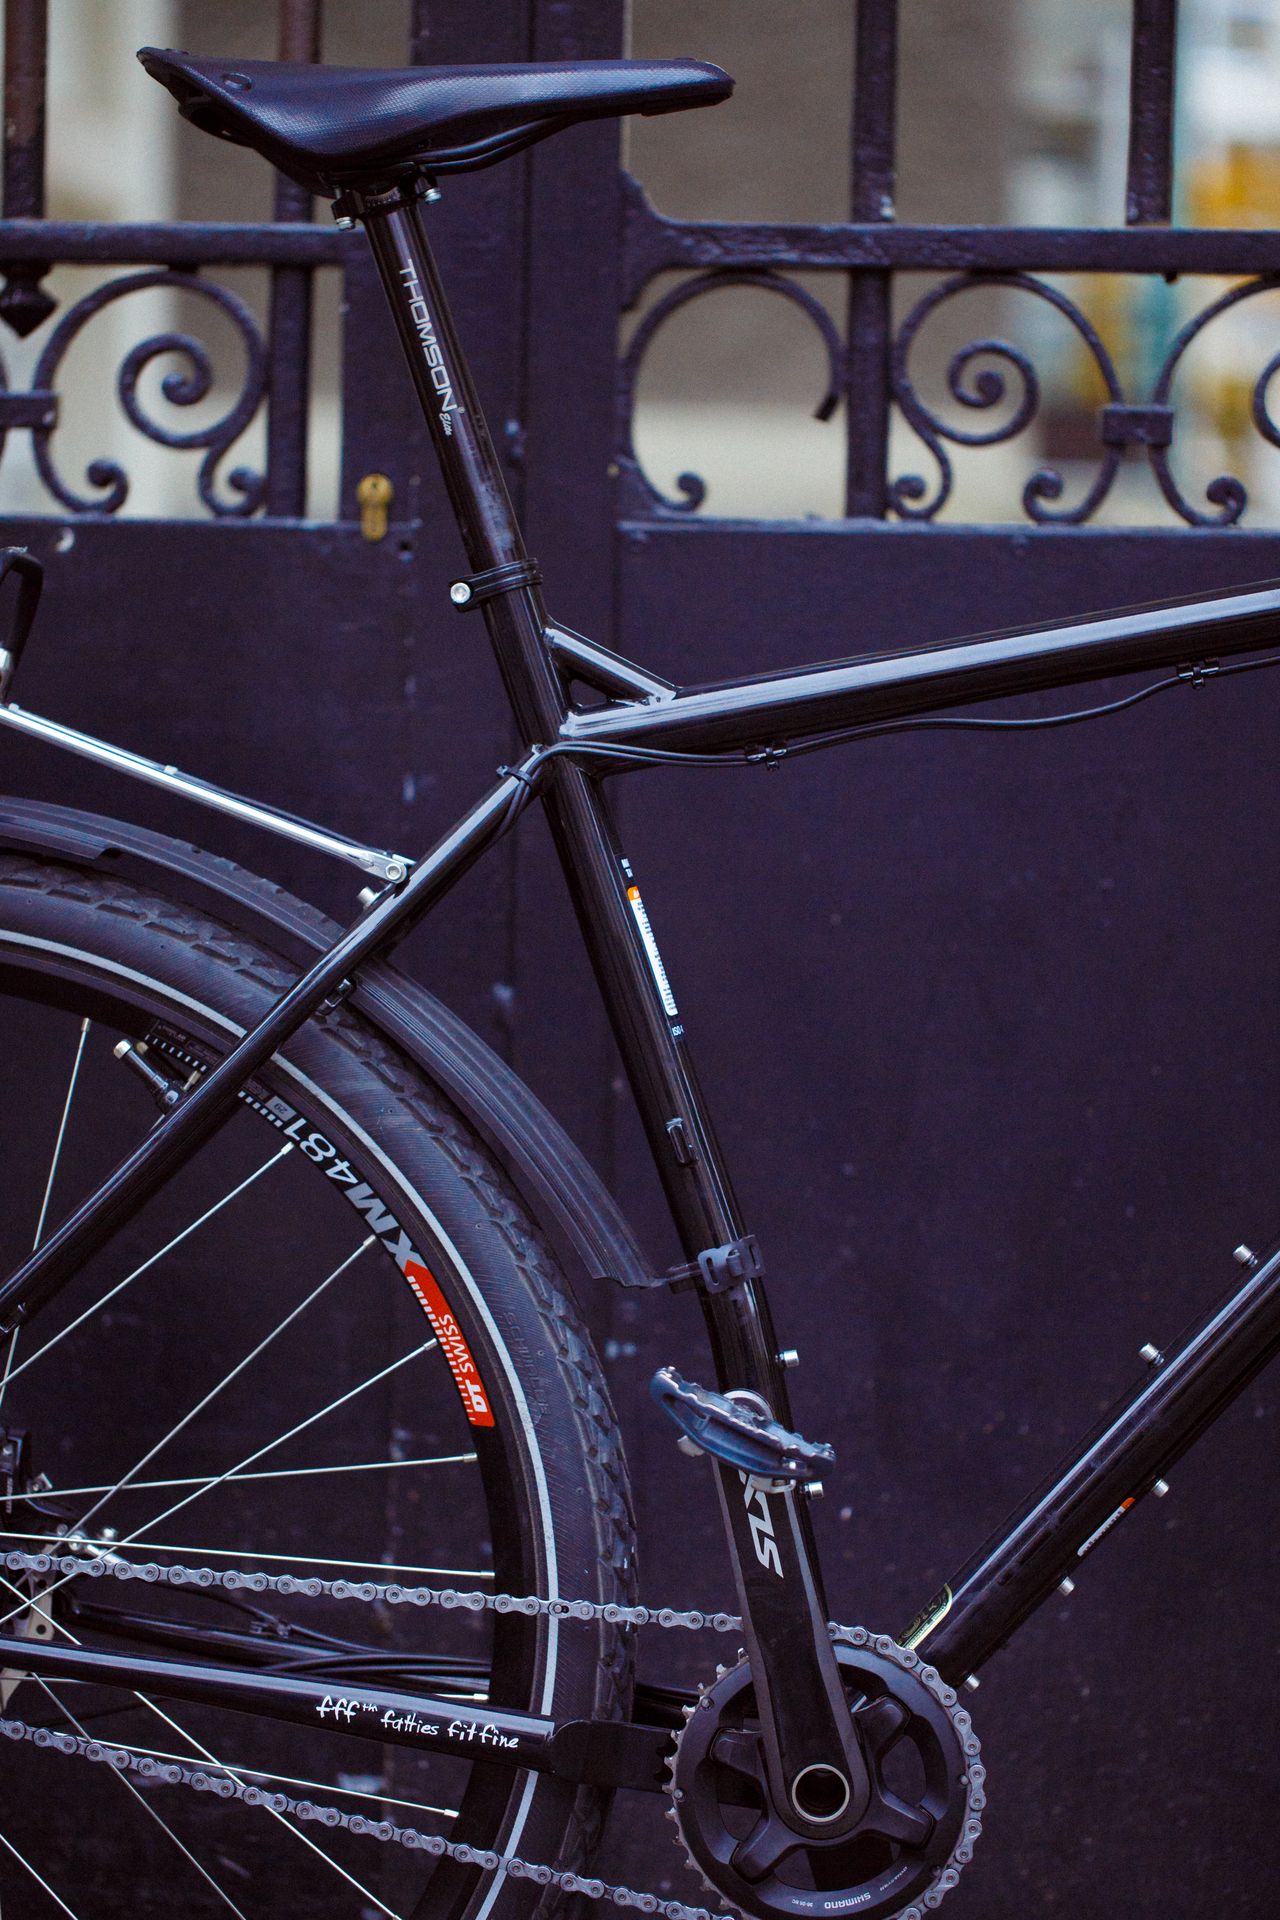 Magasin de cycles et atelier de réparation et montage vélo à la carte à Paris 13eme spécialisé dans le gravel et le voyage. acier, randonnée à vélo, bikepacking, touringbike